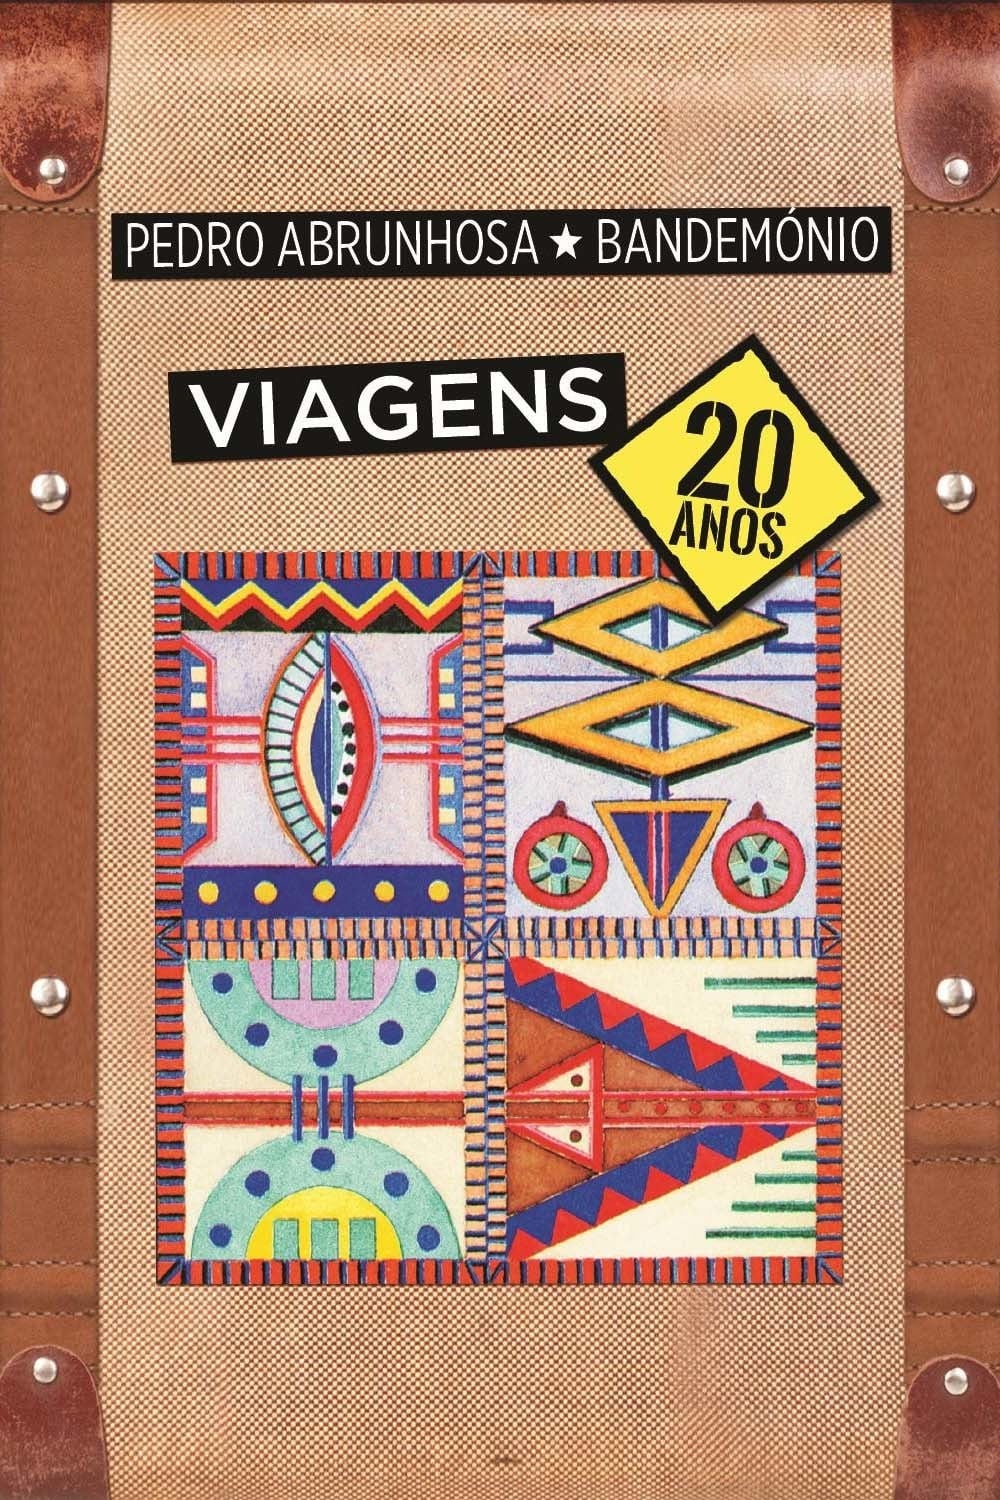 Viagens - 20 Years